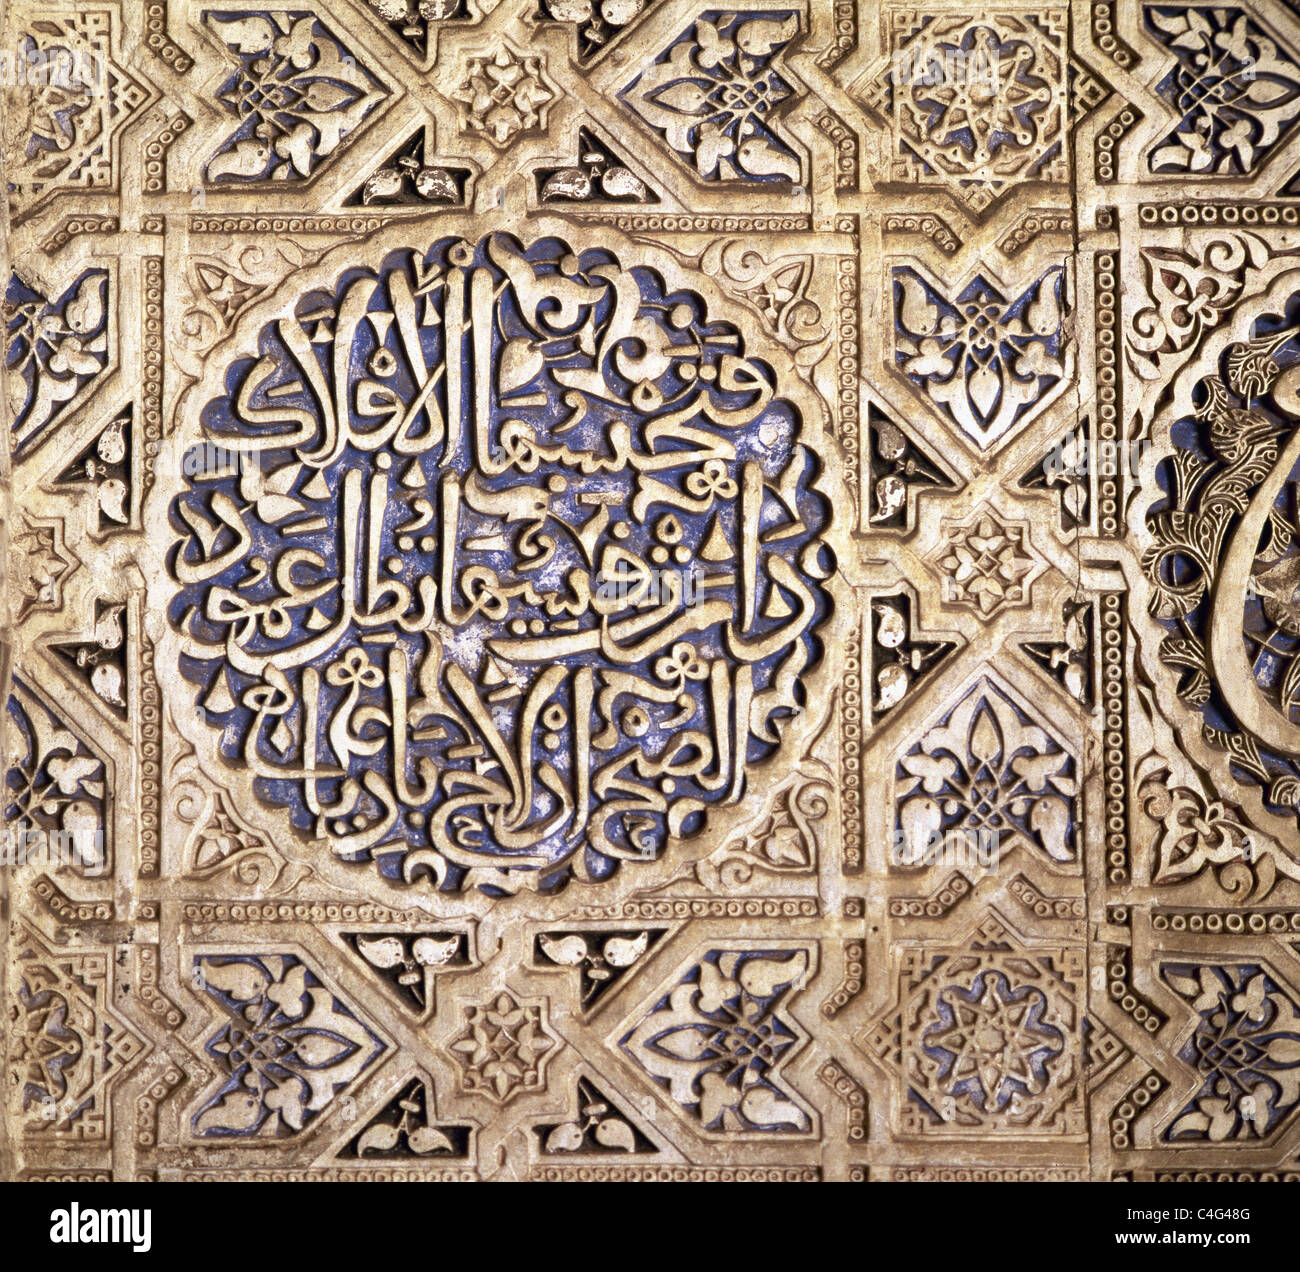 Arte islamica. Spagna. Il XIV secolo. Nasrid ser. L'Alhambra. Intonacando decorazioni in stucco. Sala delle Due Sorelle. Granada. Foto Stock